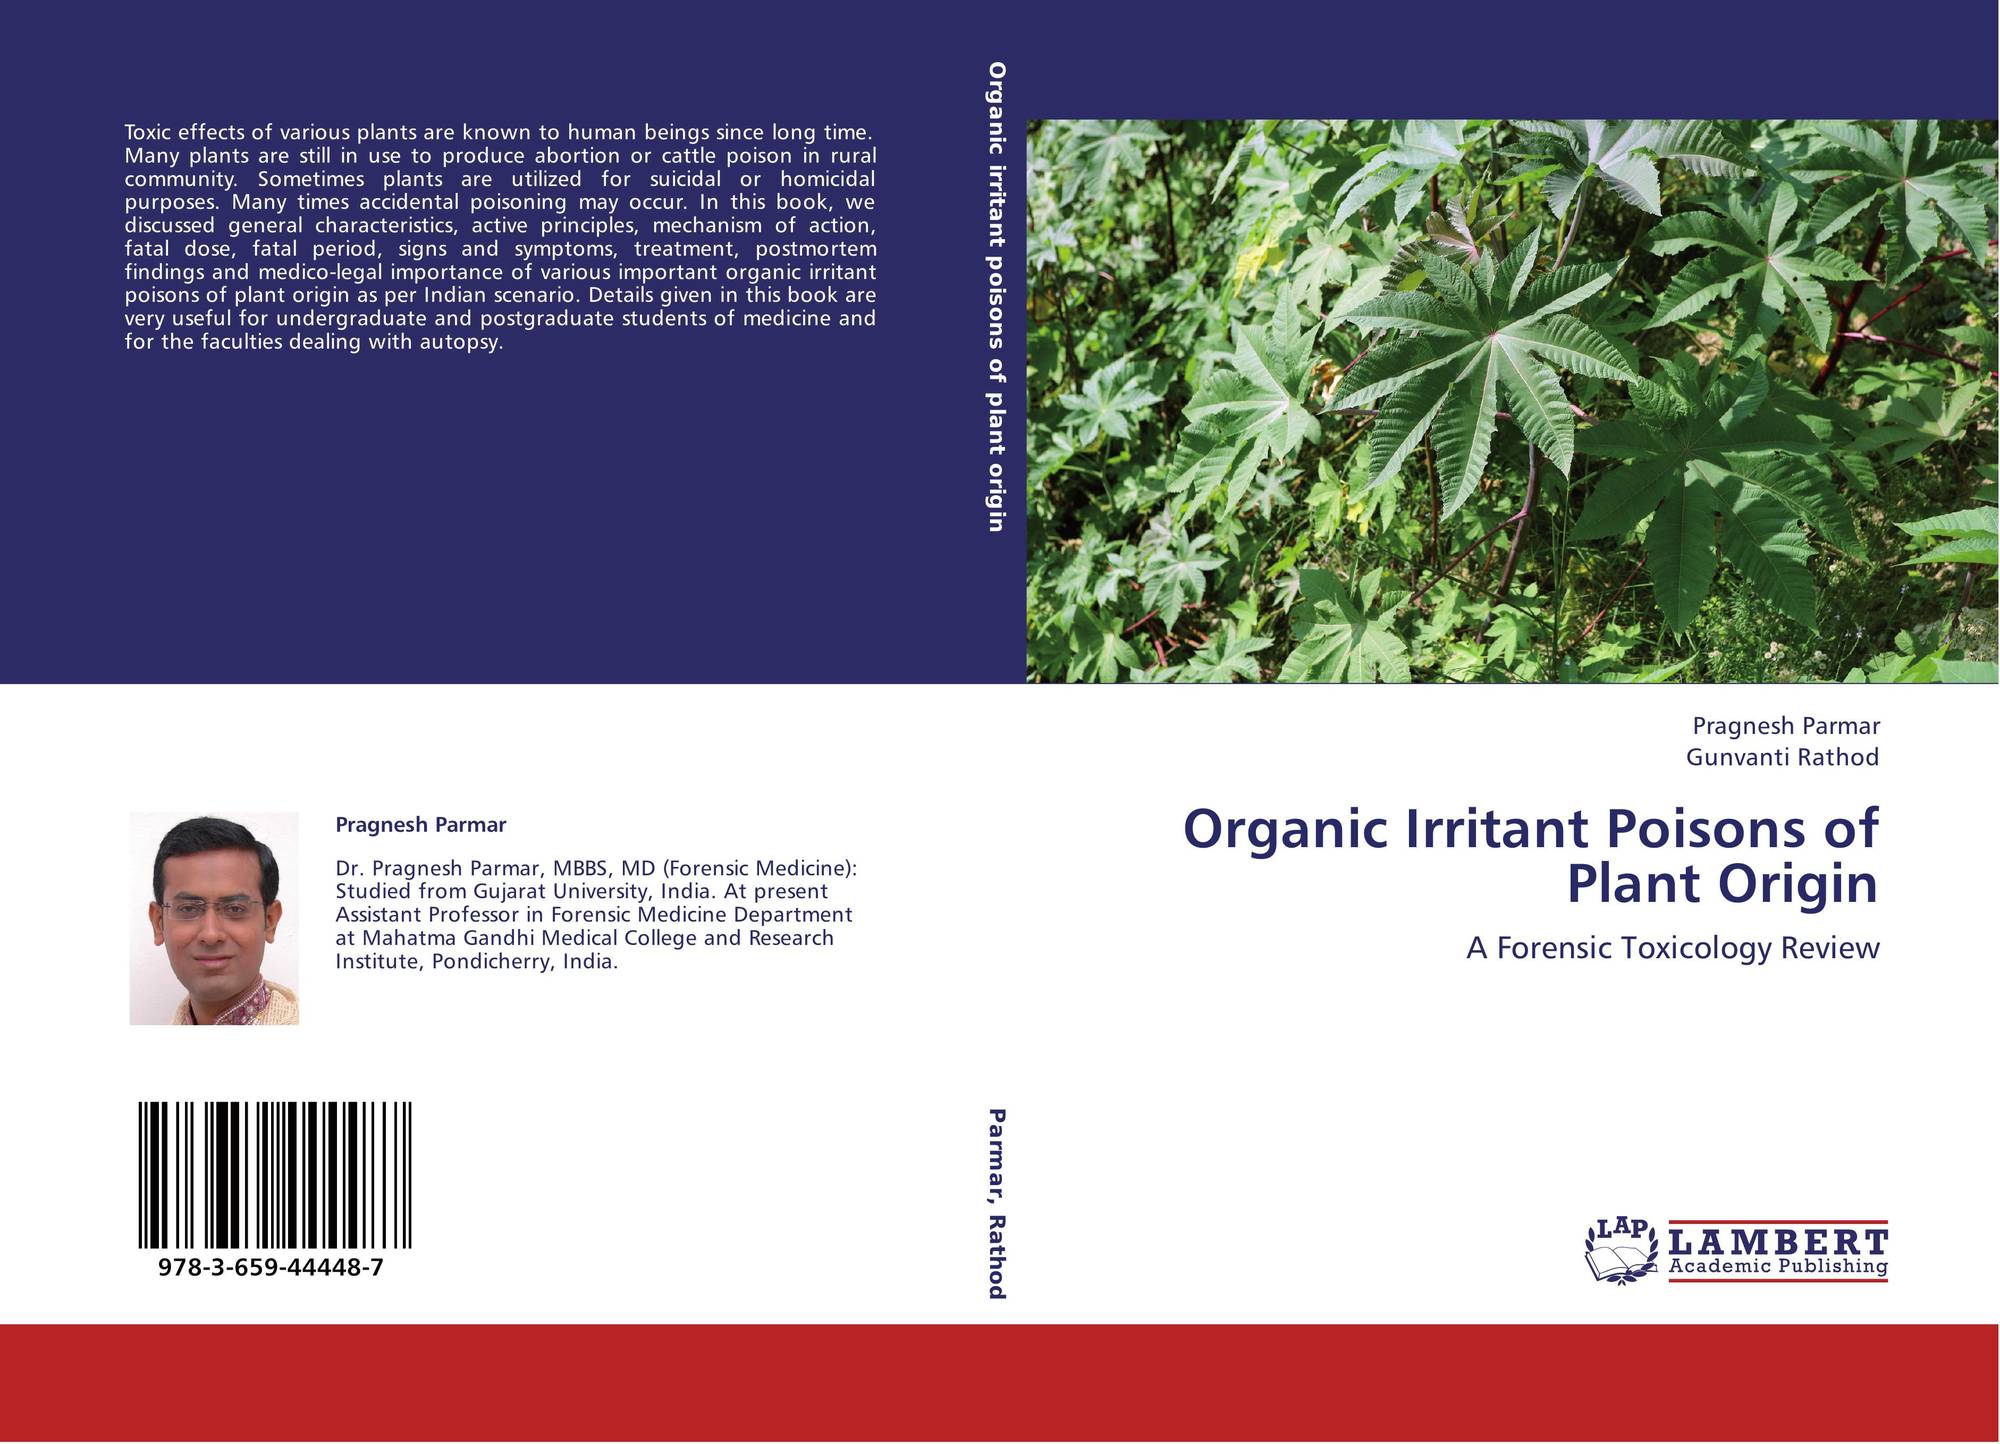 Plant origin